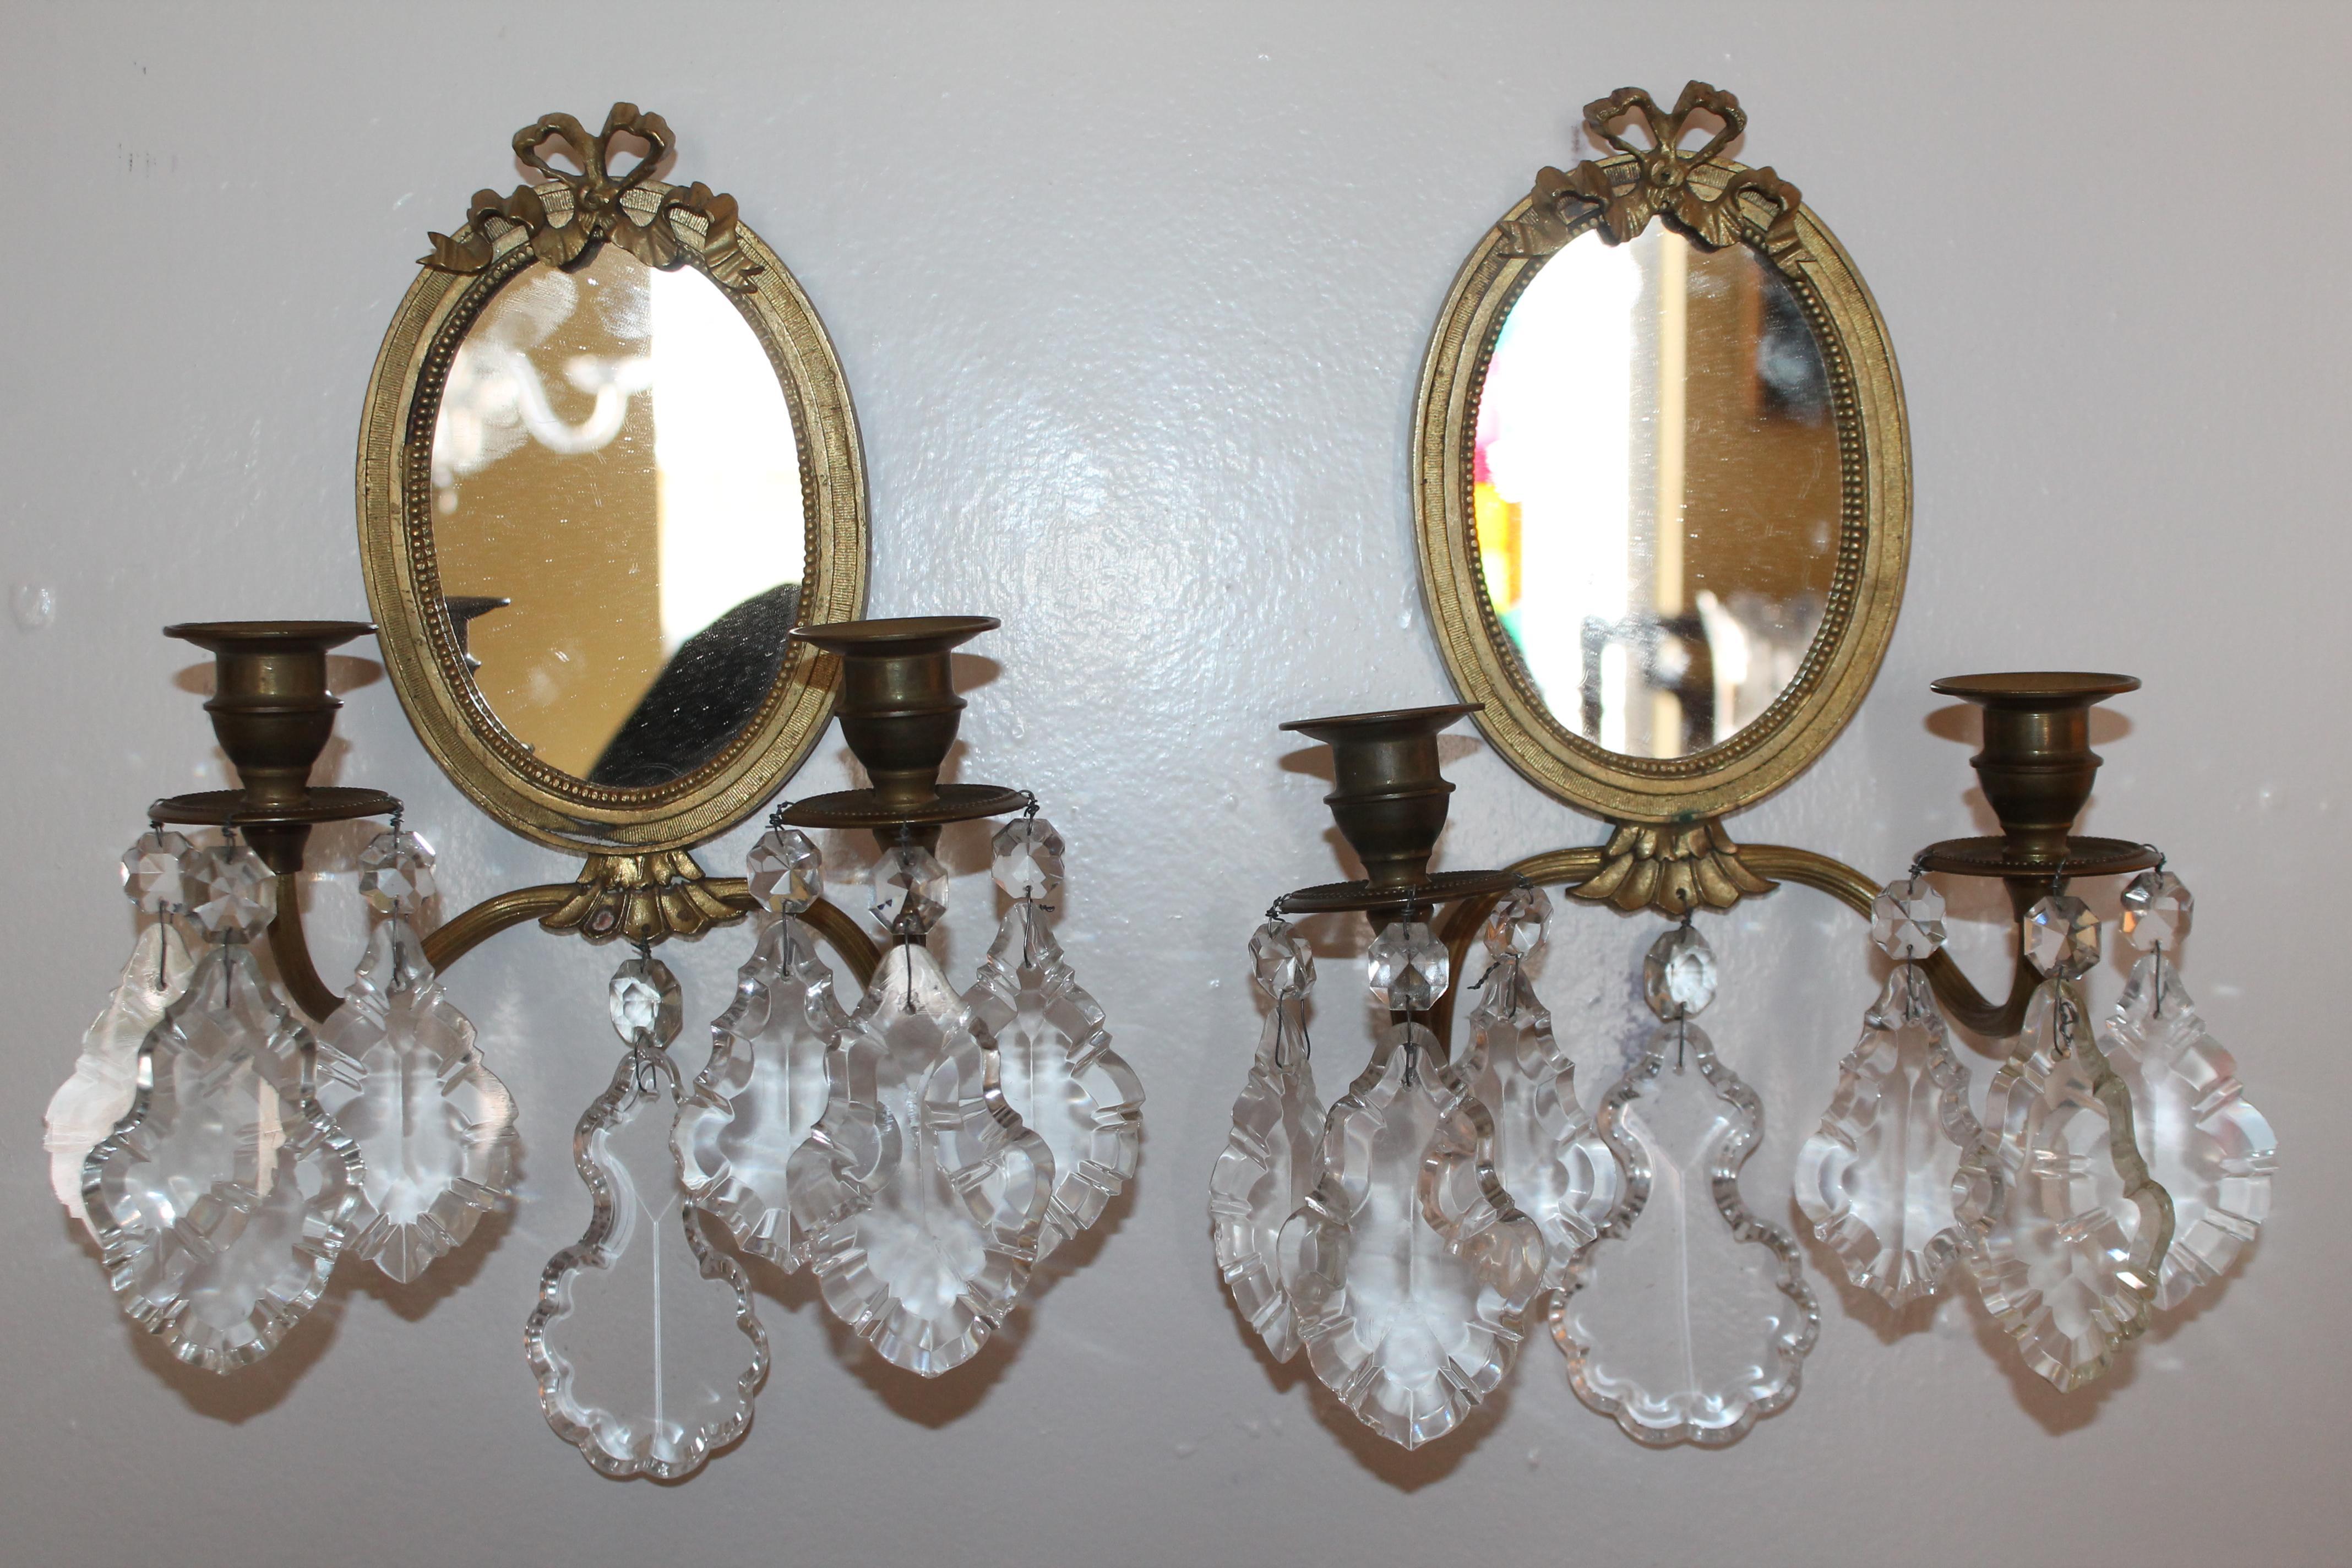 Paar 19thc Französisch Louis XVI Bronze & Kristall Spiegel zurück Wandleuchter. In ihrem ursprünglichen, nicht elektrifizierten Zustand. Wunderschön! Detail der Schleife.